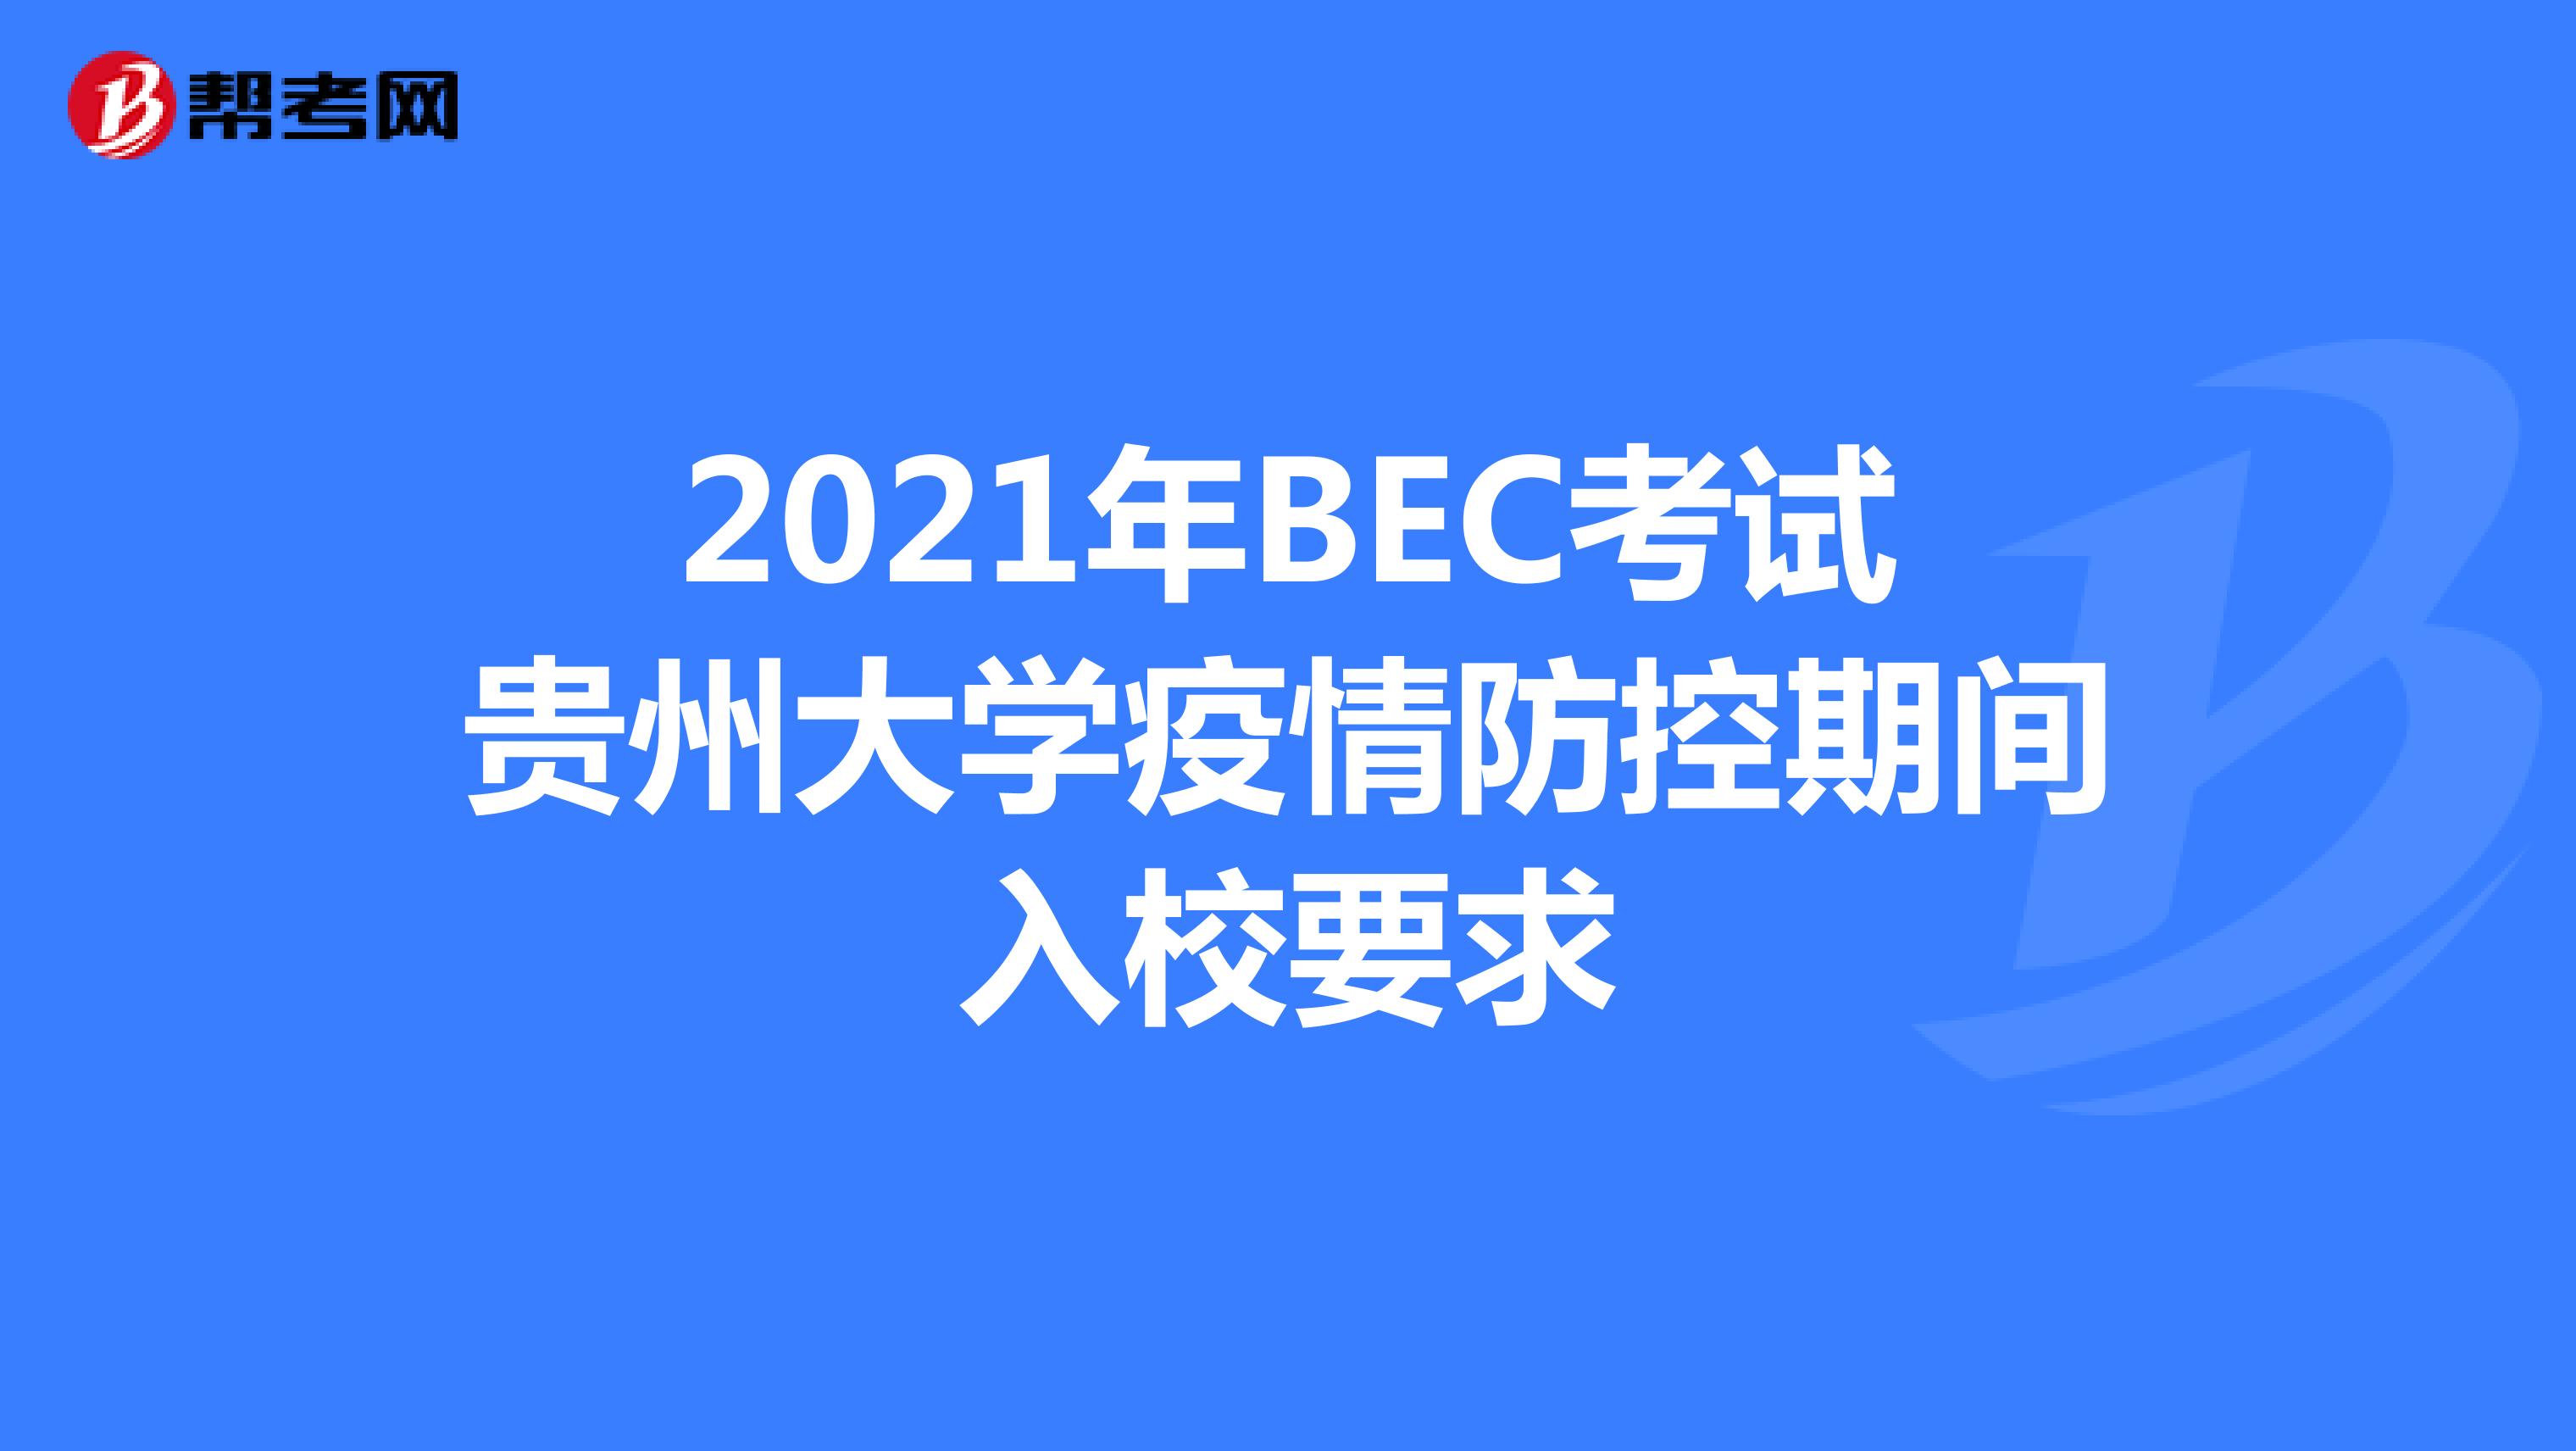 2021年BEC考试贵州大学疫情防控期间入校要求